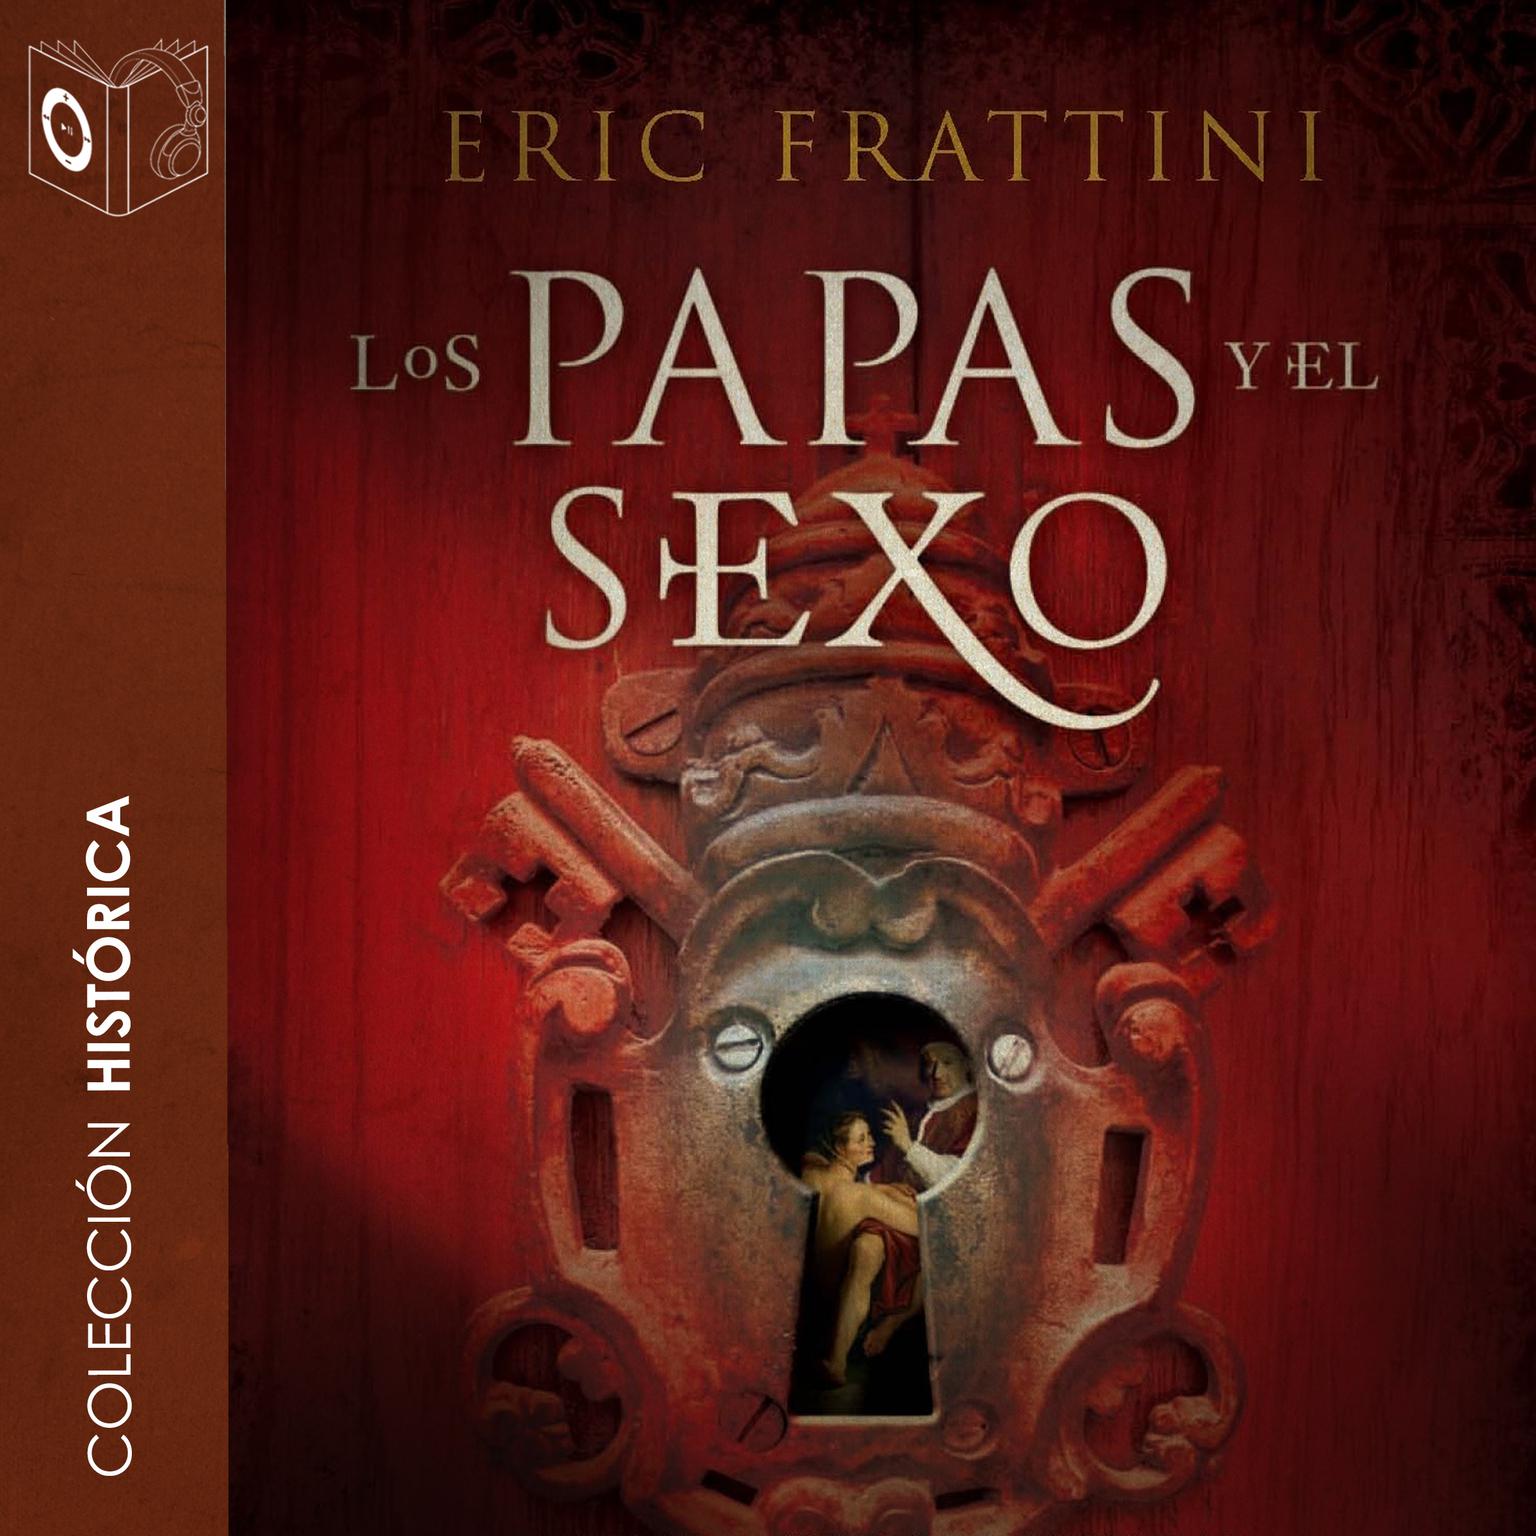 Los papas y el sexo Audiobook, by Eric Frattini